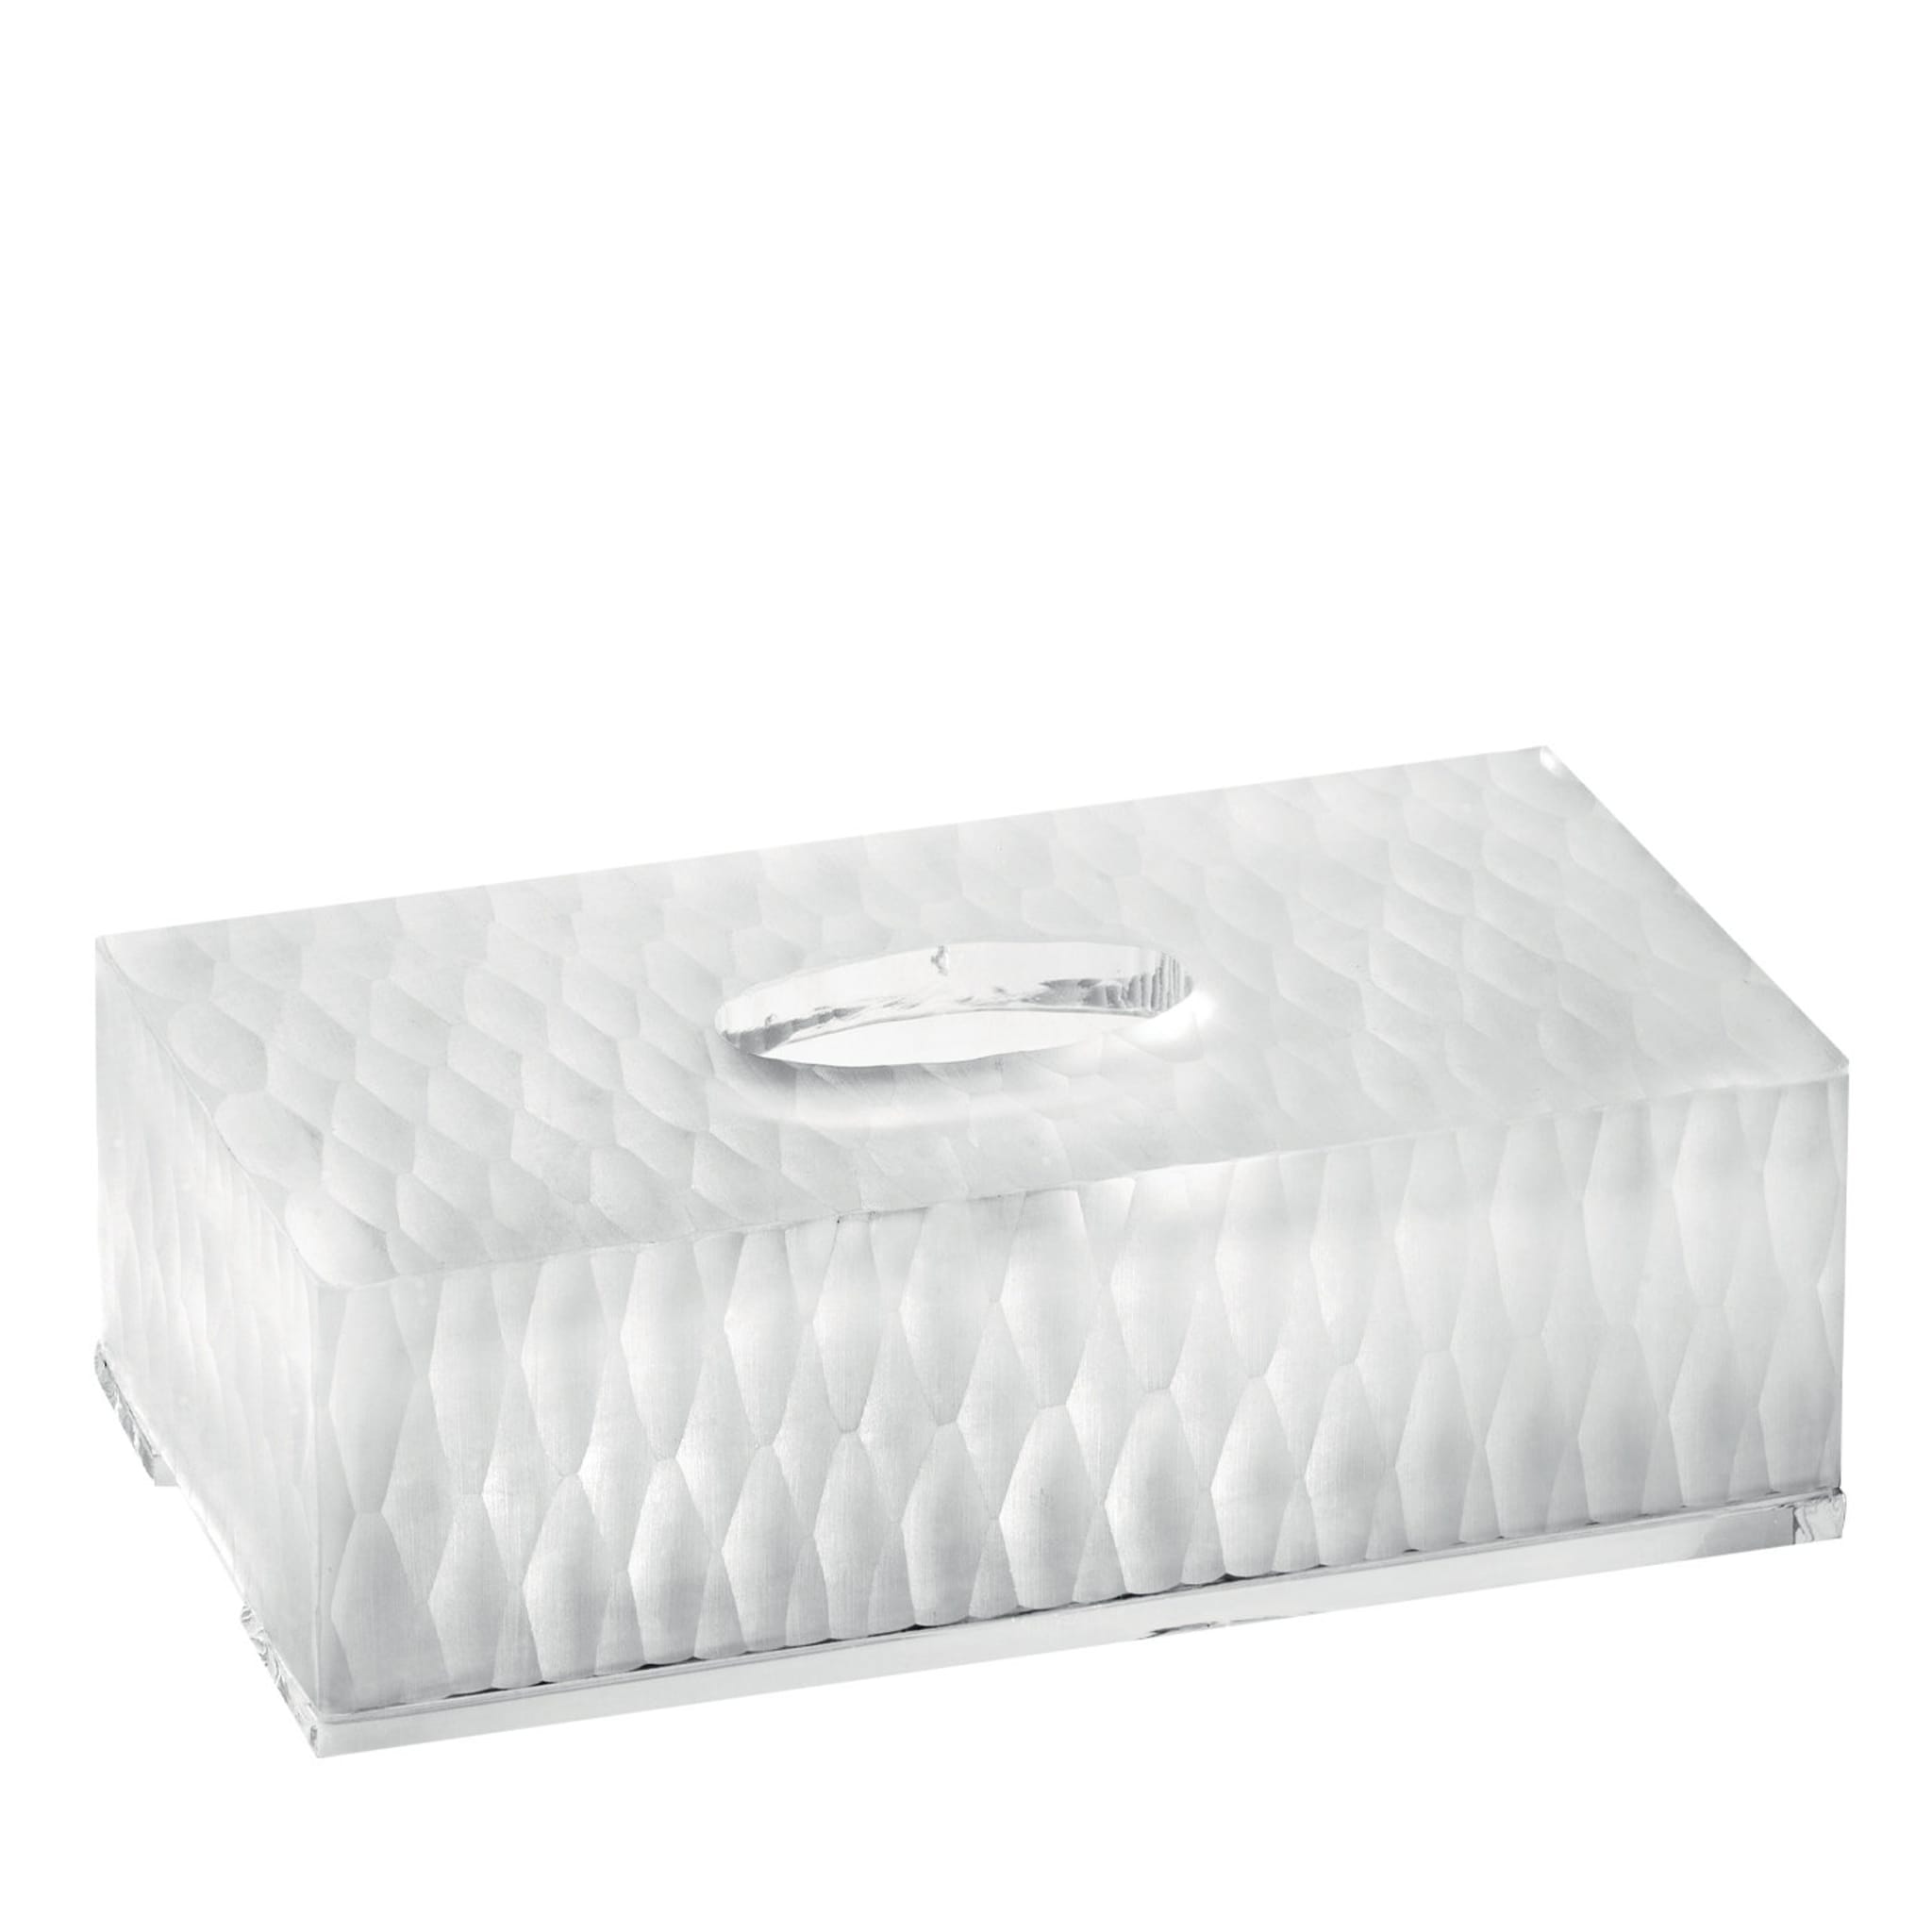 Sechseckmuster Tissue-Box-Abdeckung - Hauptansicht